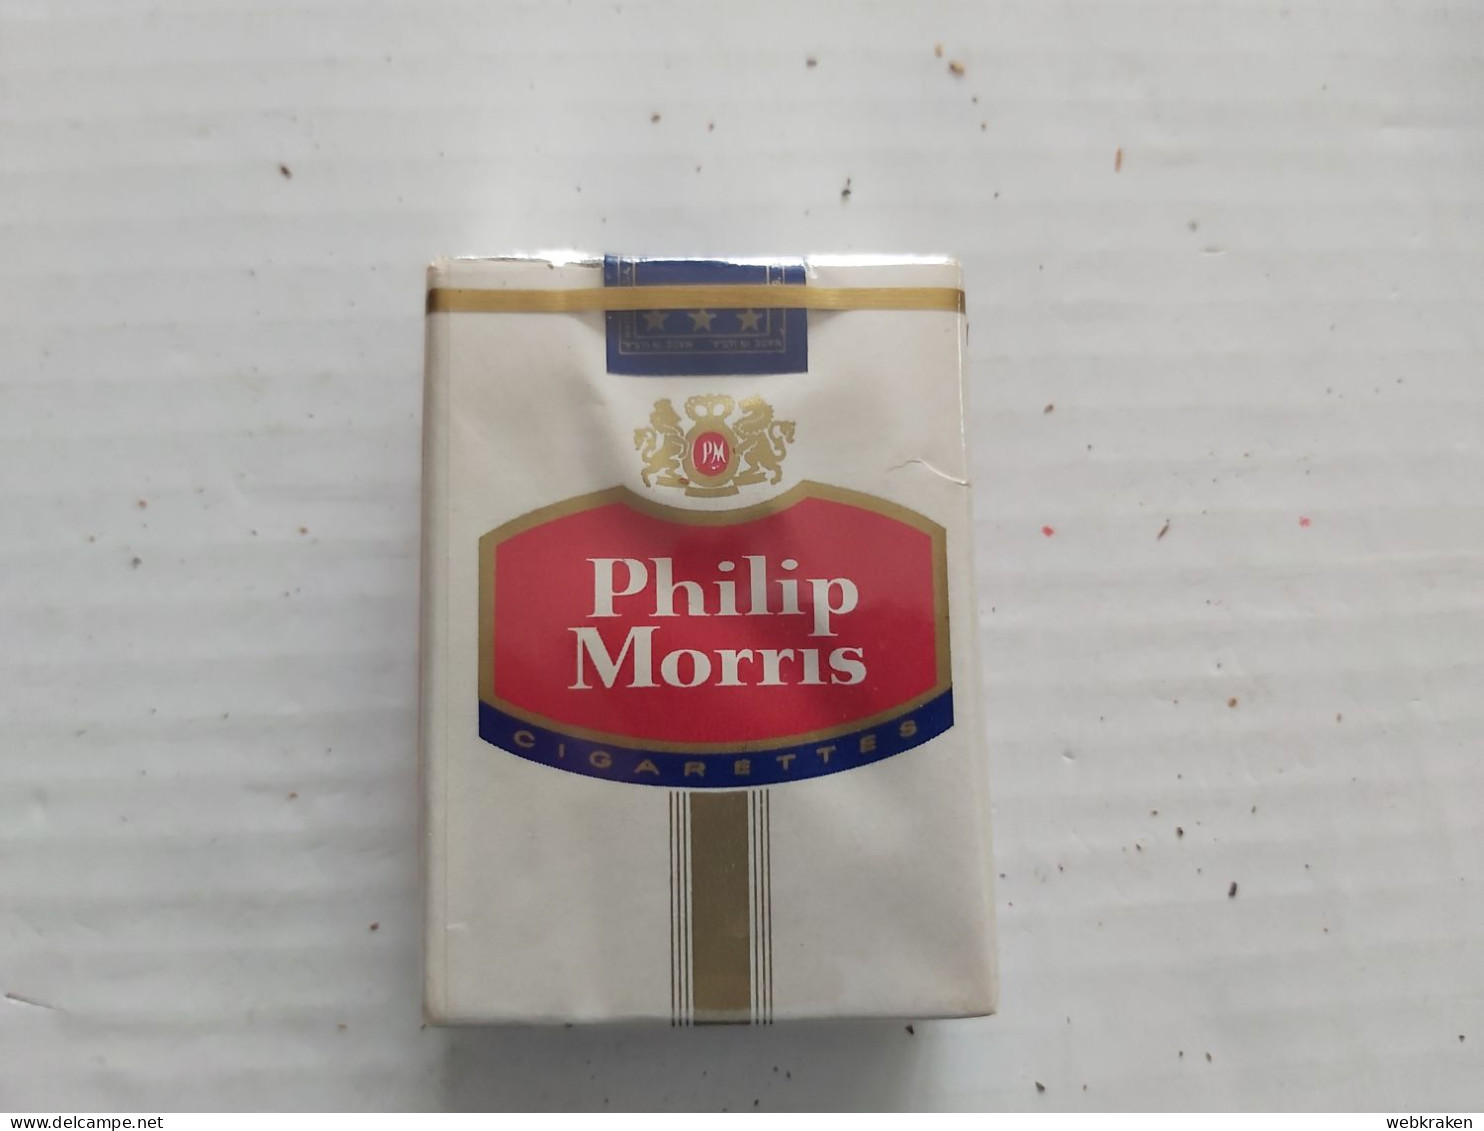 PACCHETTO SIGARETTE PIENO TABACCO FUMO TABACS WITH ORIGINAL CIGARETTES TOBACCO MARCA PHILIP MORRIS U.S.A. CON SIGARETTE - Cigarette Holders